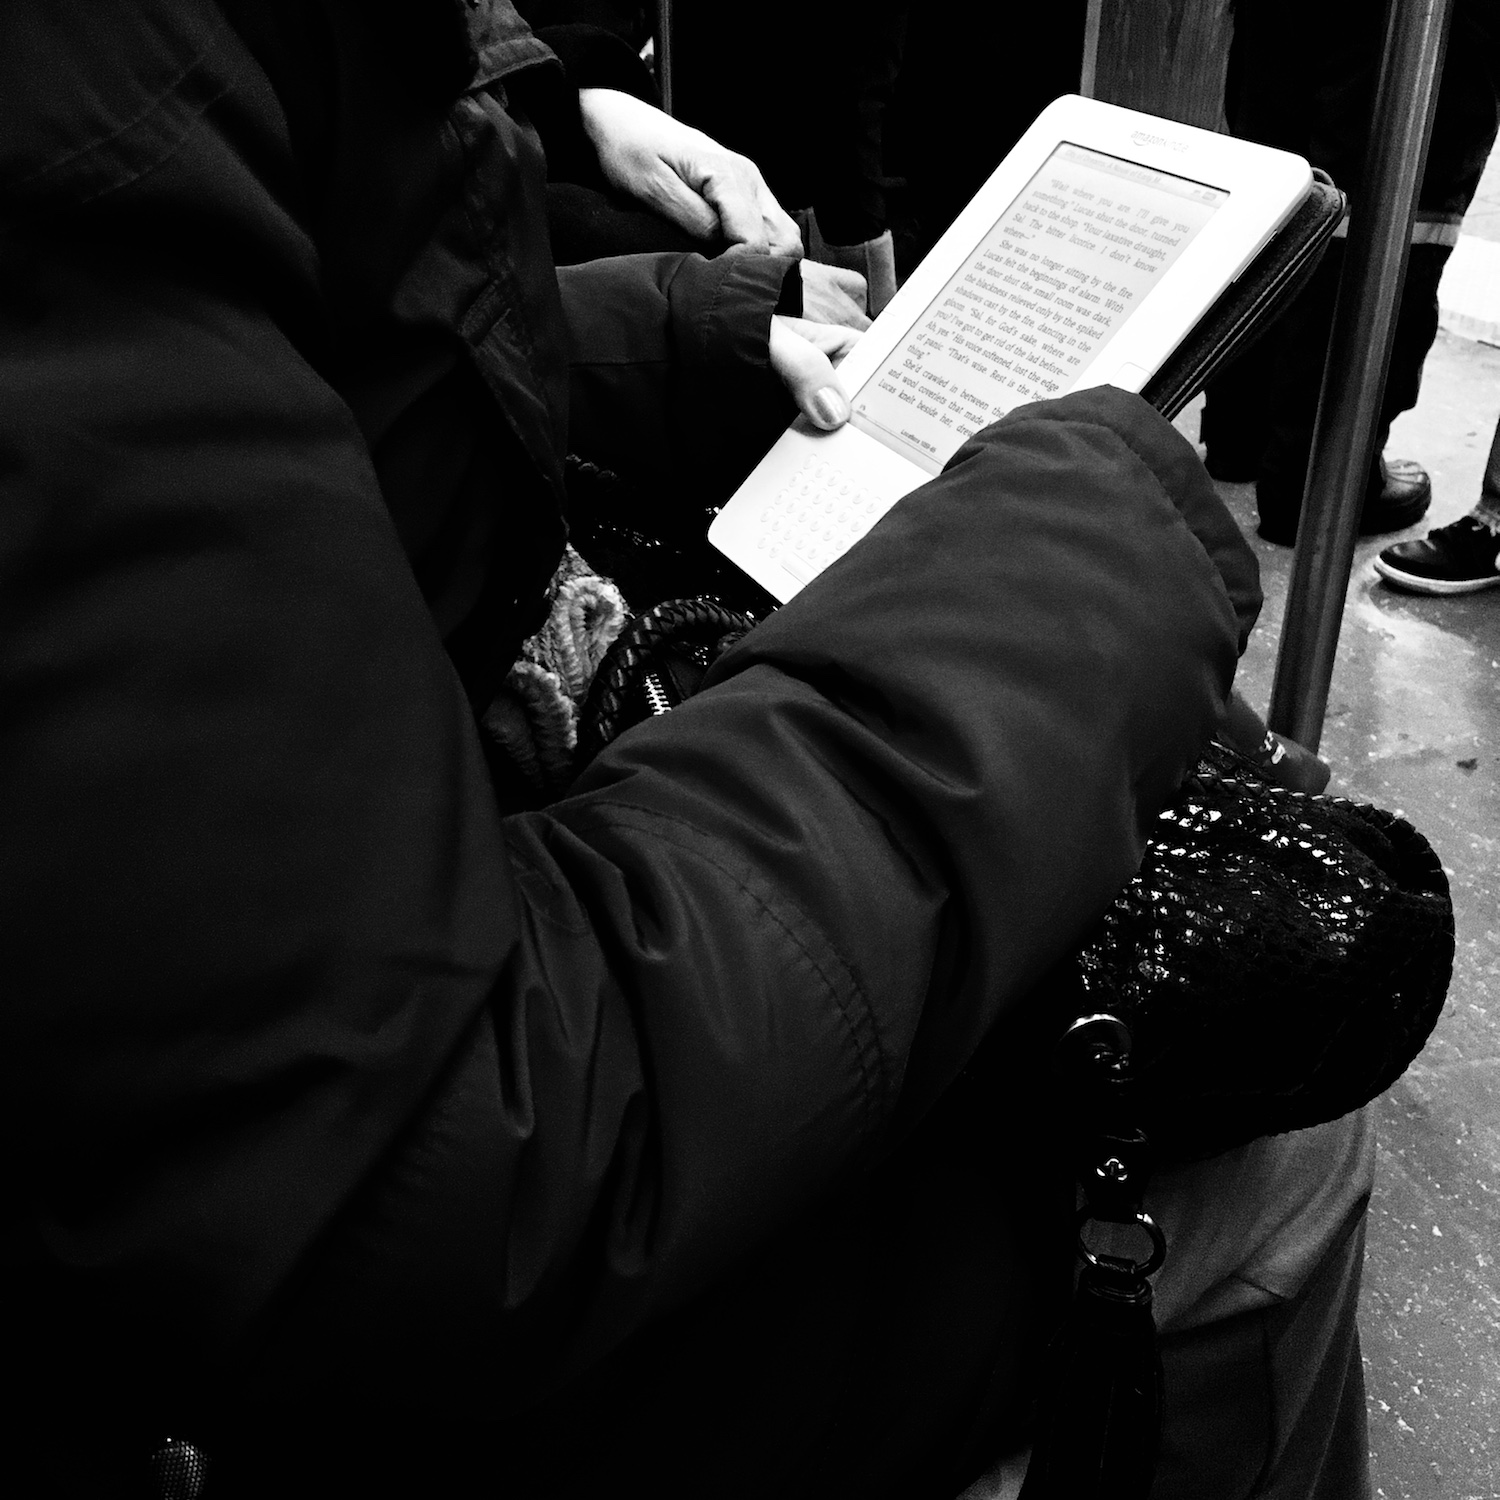 Buch lesen in der Metro